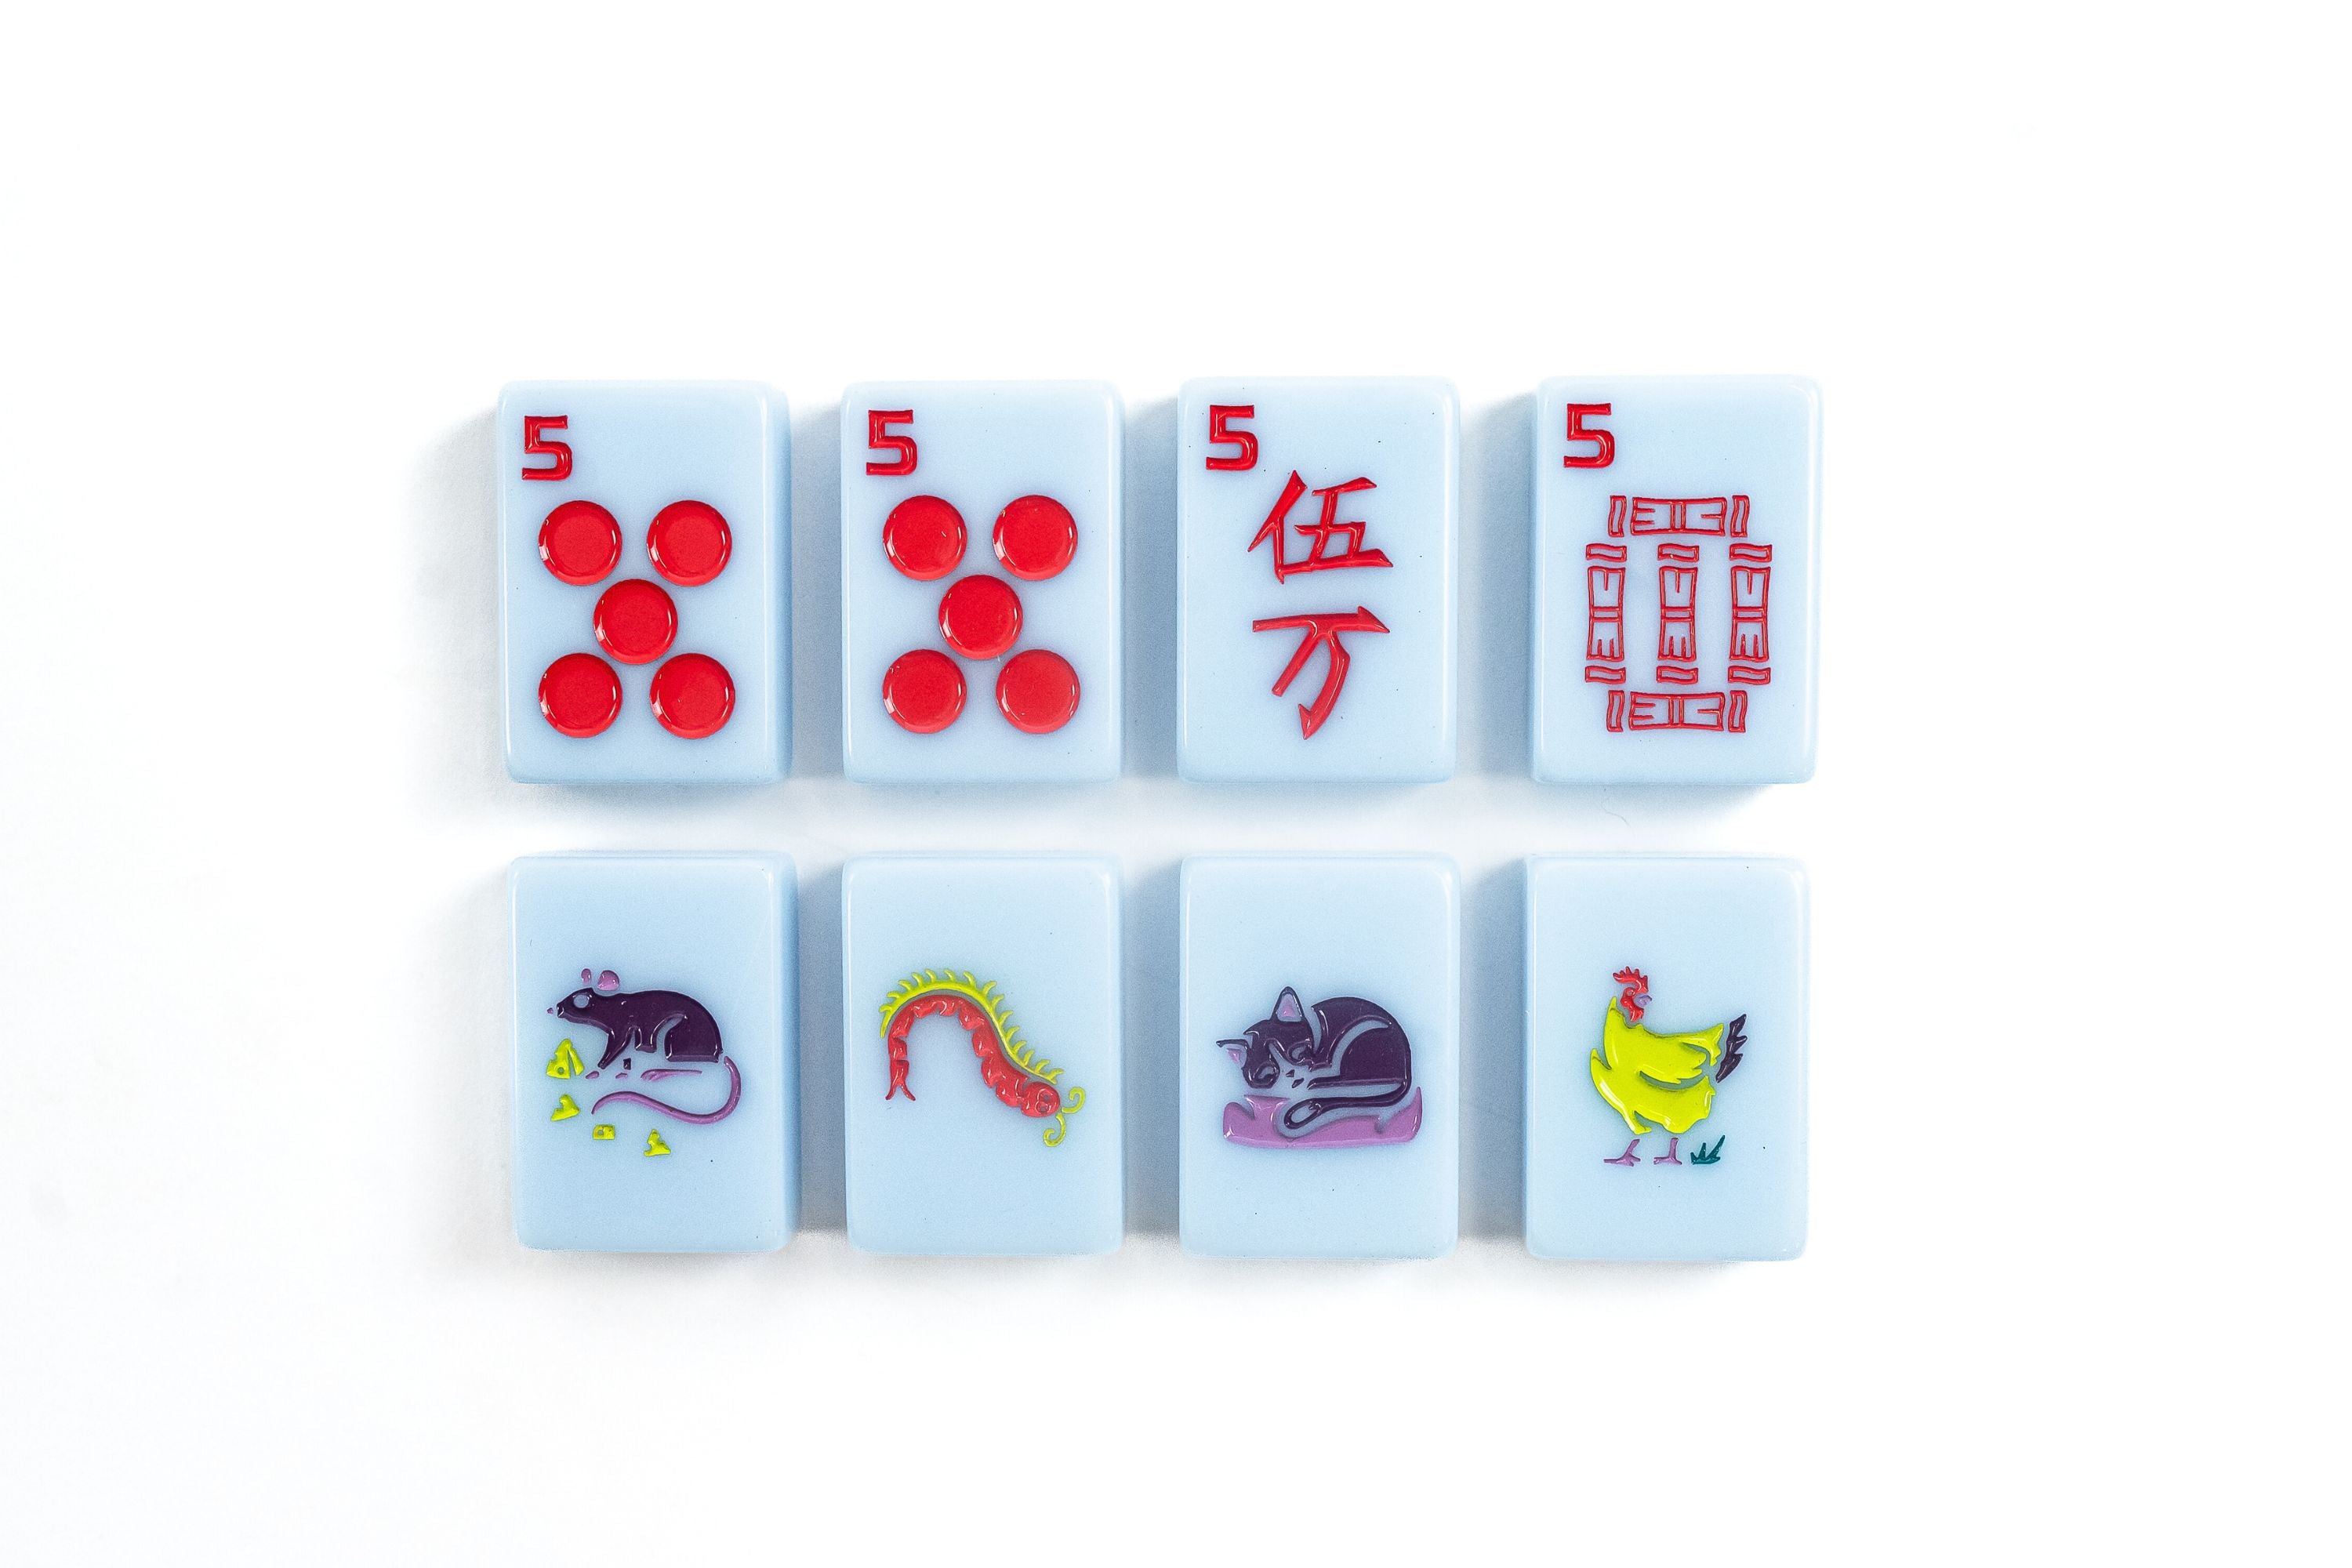 Mahjong online  Mahjong online, Mahjong, Mahjong tiles